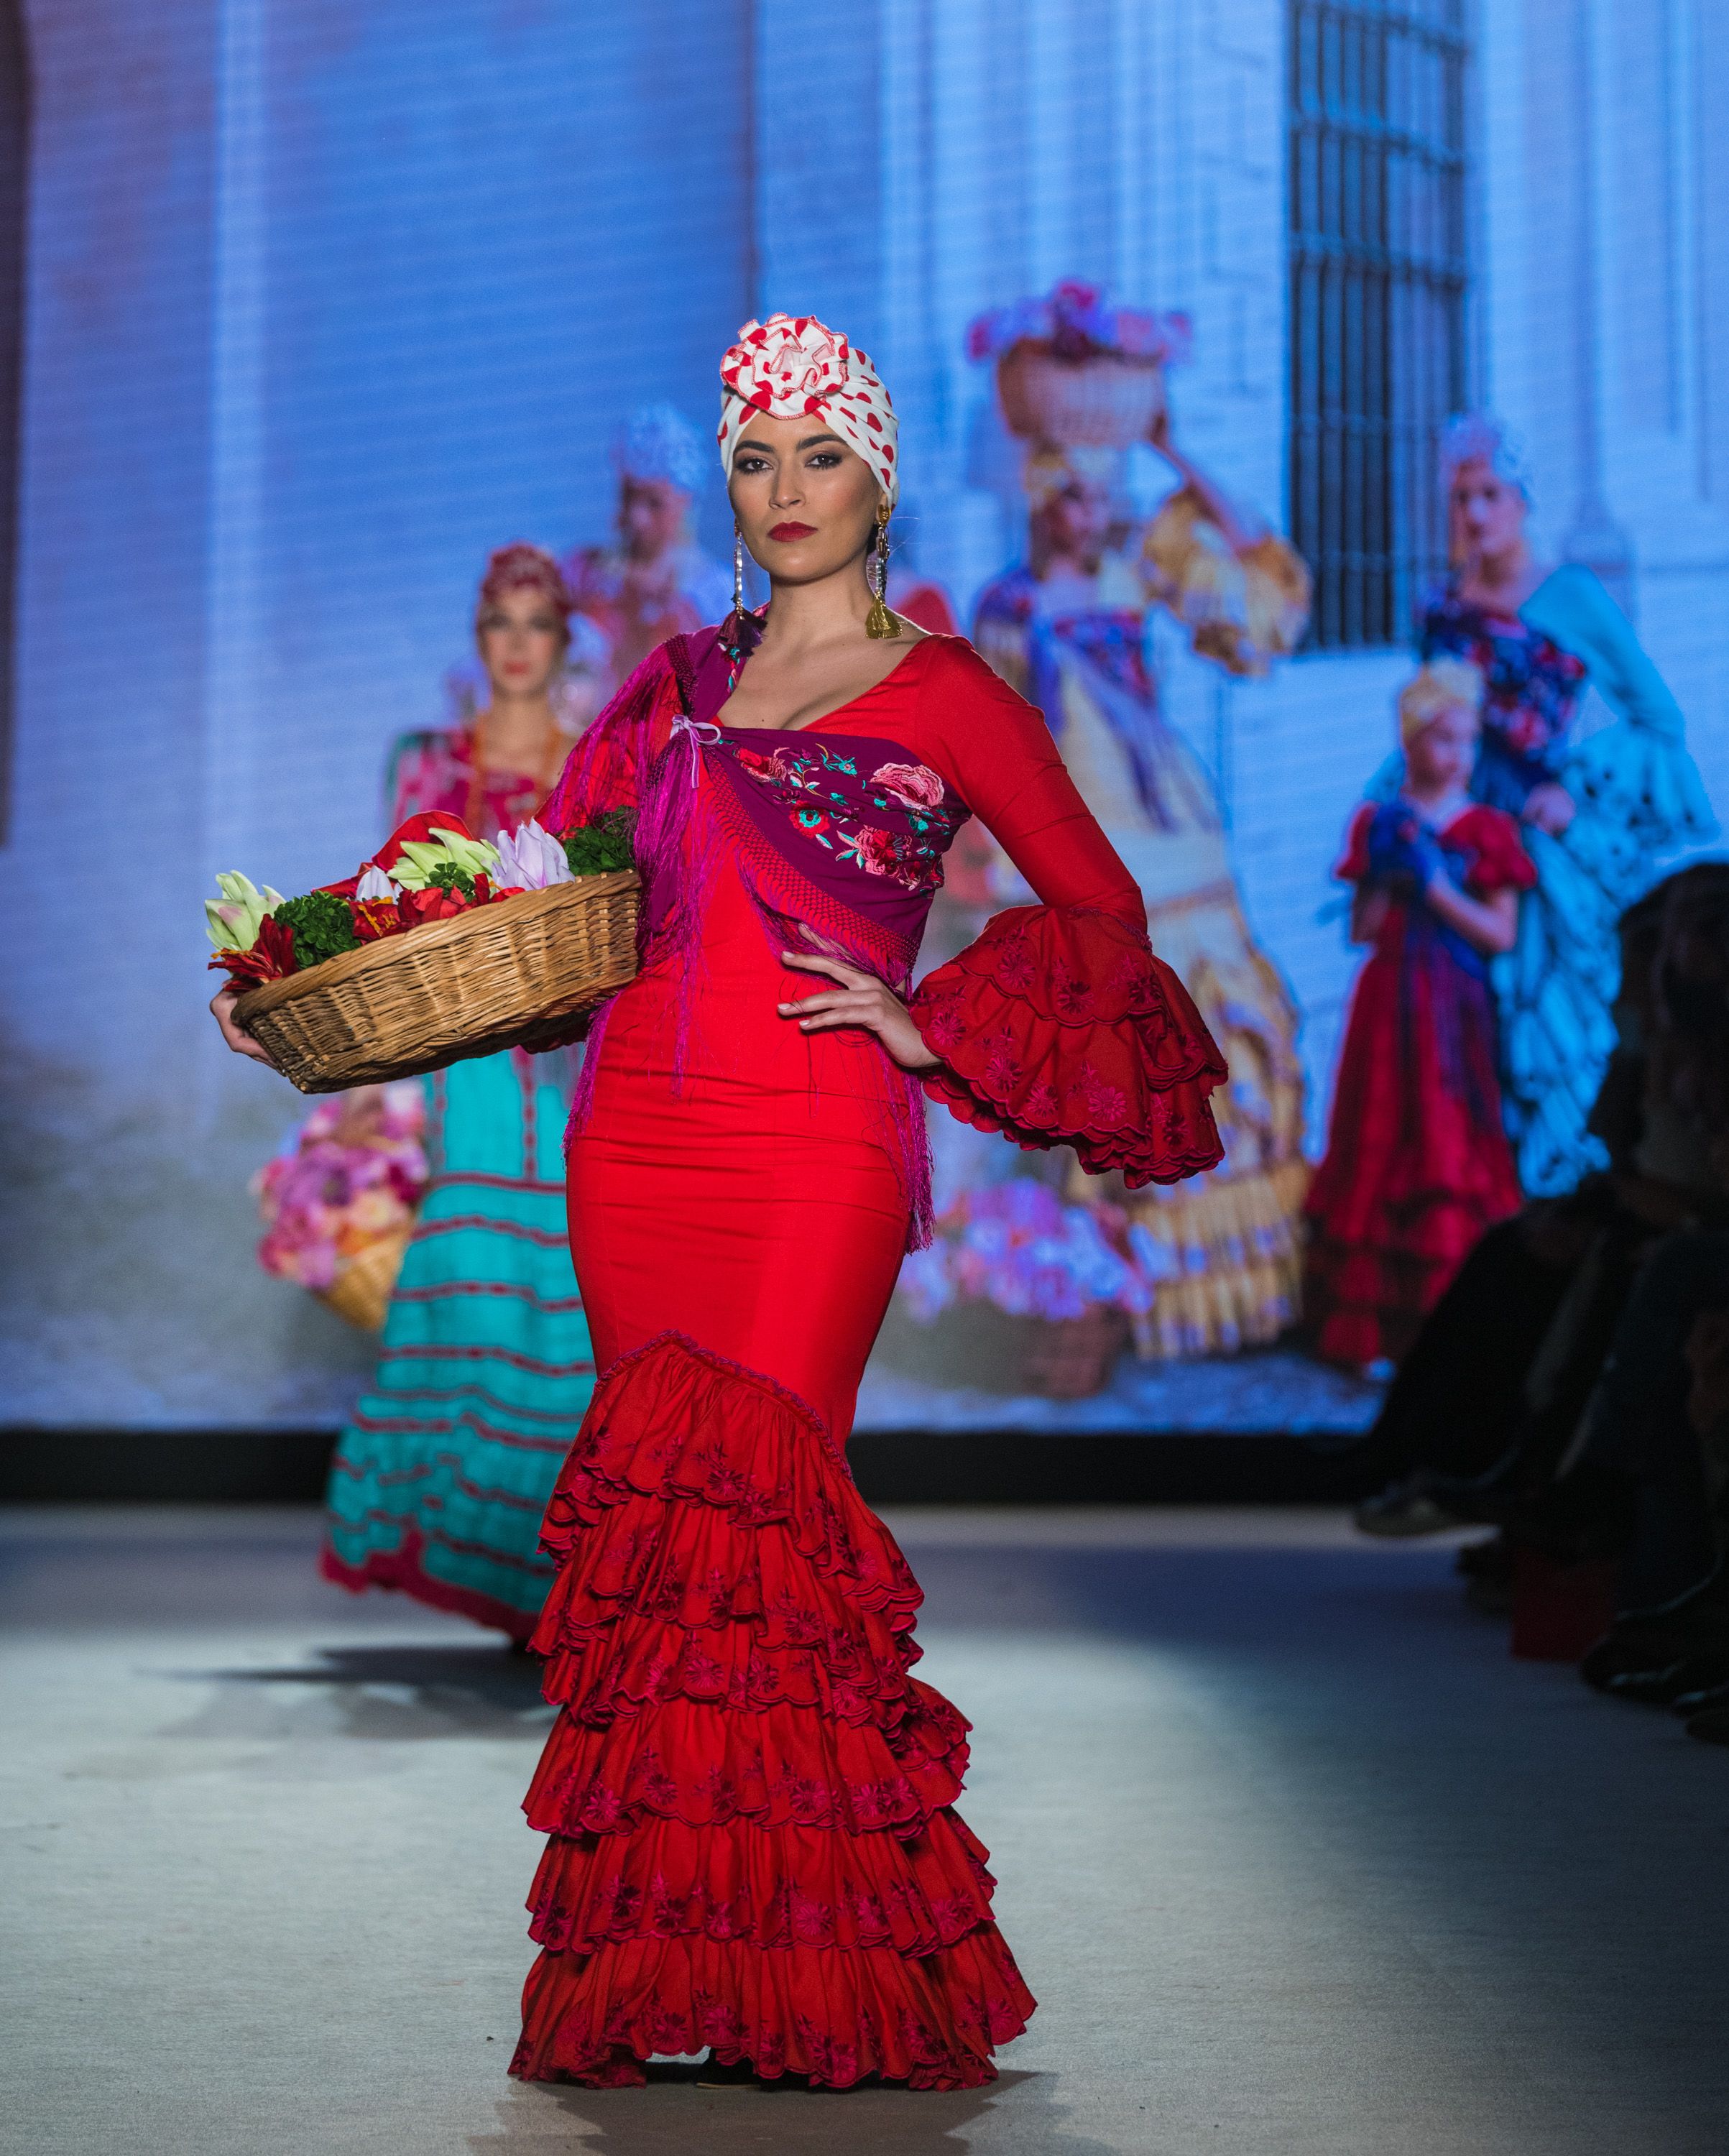 Trajes de Flamenca, Moda Flamenca y Complementos Flamencos - El Rocio